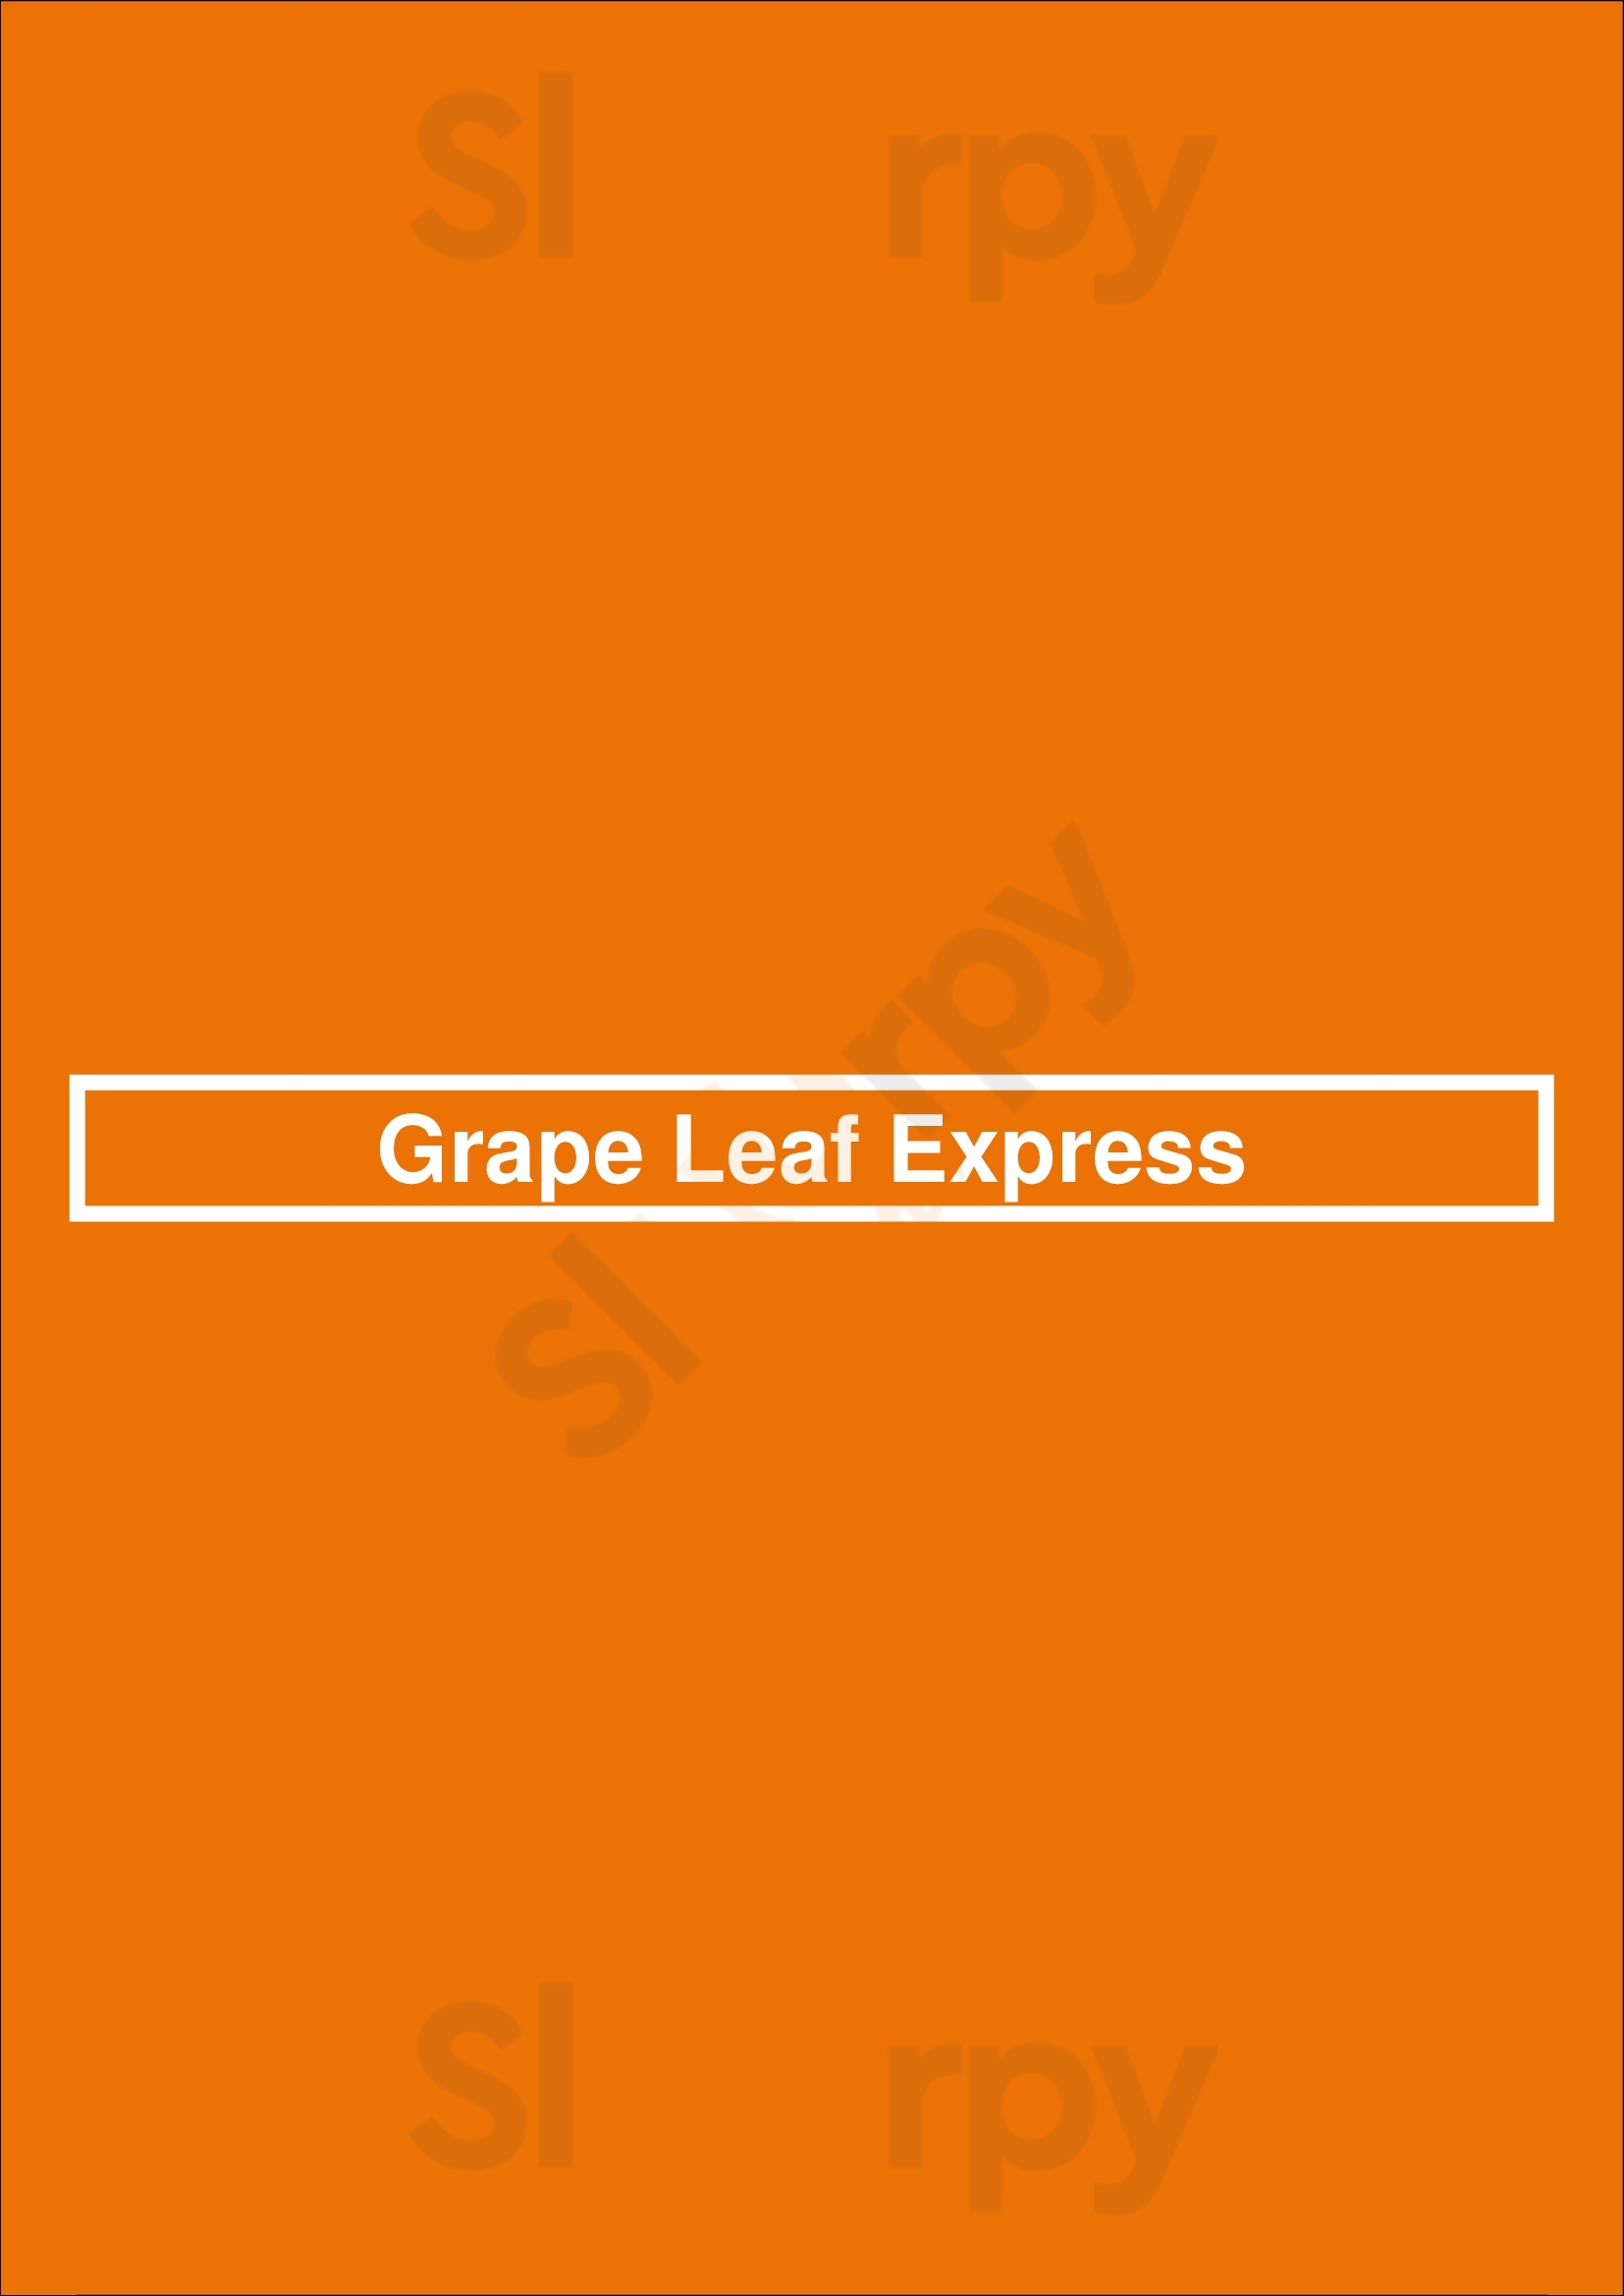 Grape Leaf Express Tampa Menu - 1